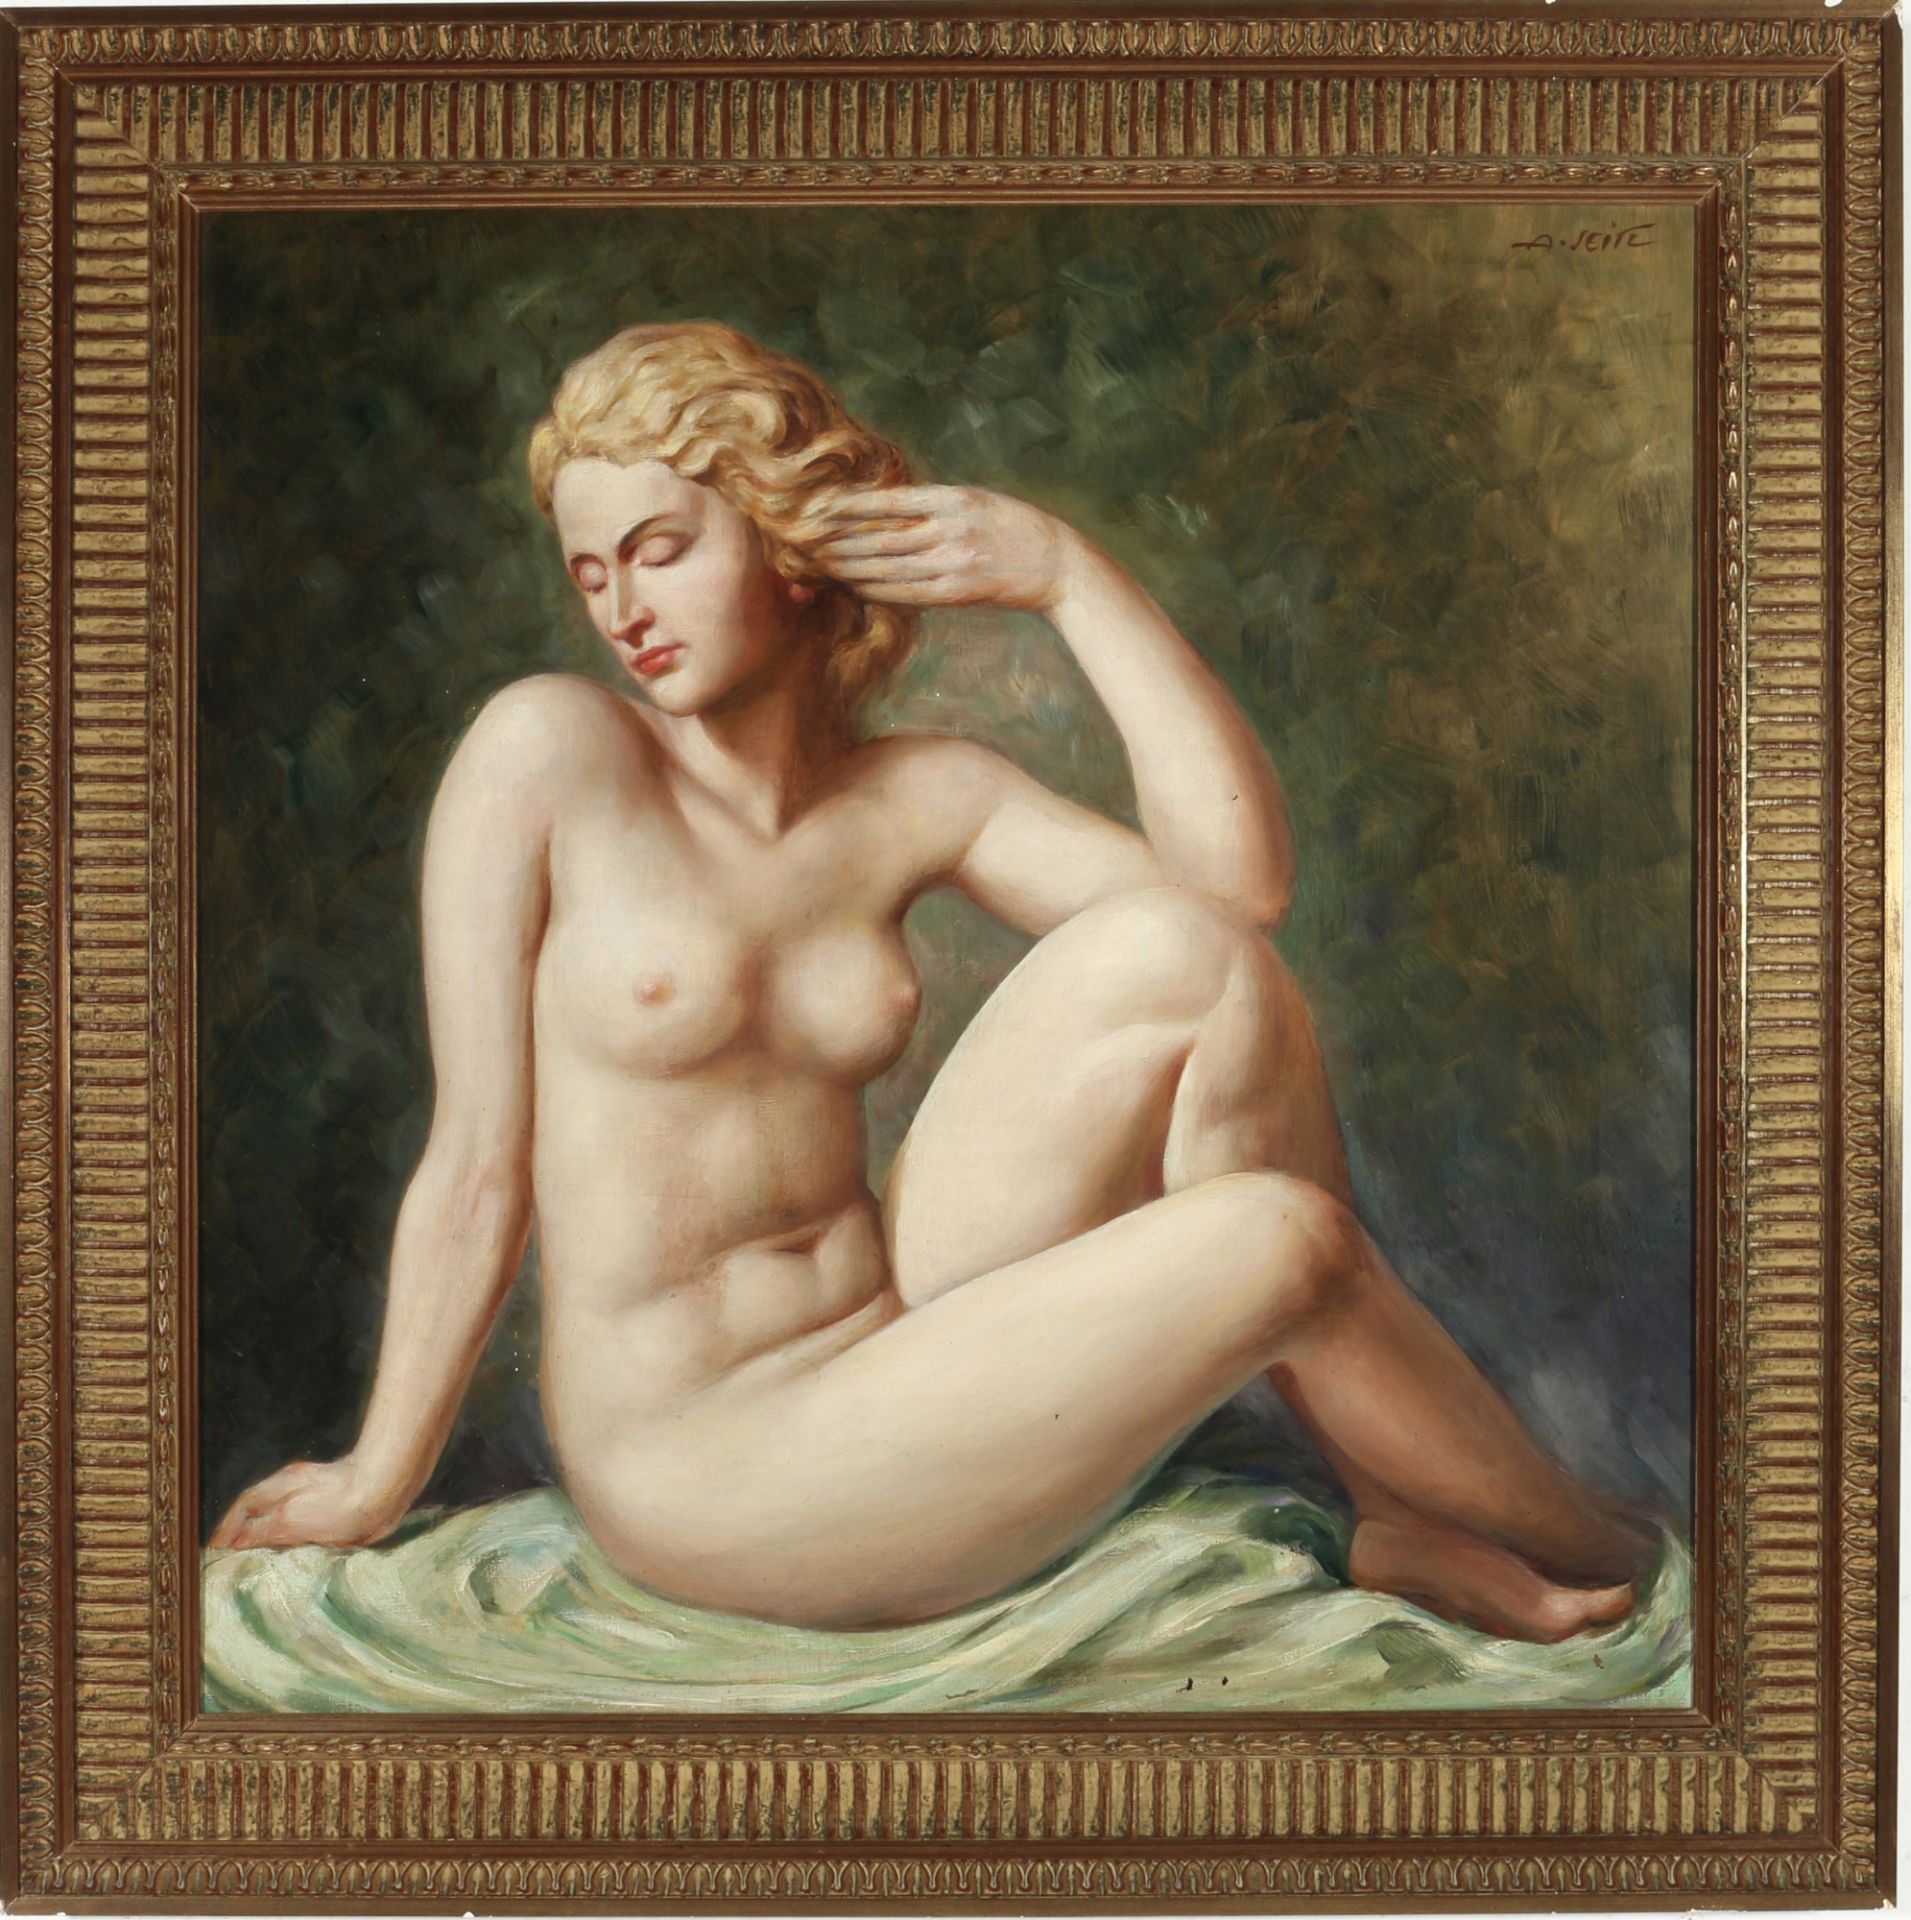 A. Seitl um 1900, sitzender Frauenakt, sitting female nude act ca. 1900, - Bild 2 aus 4